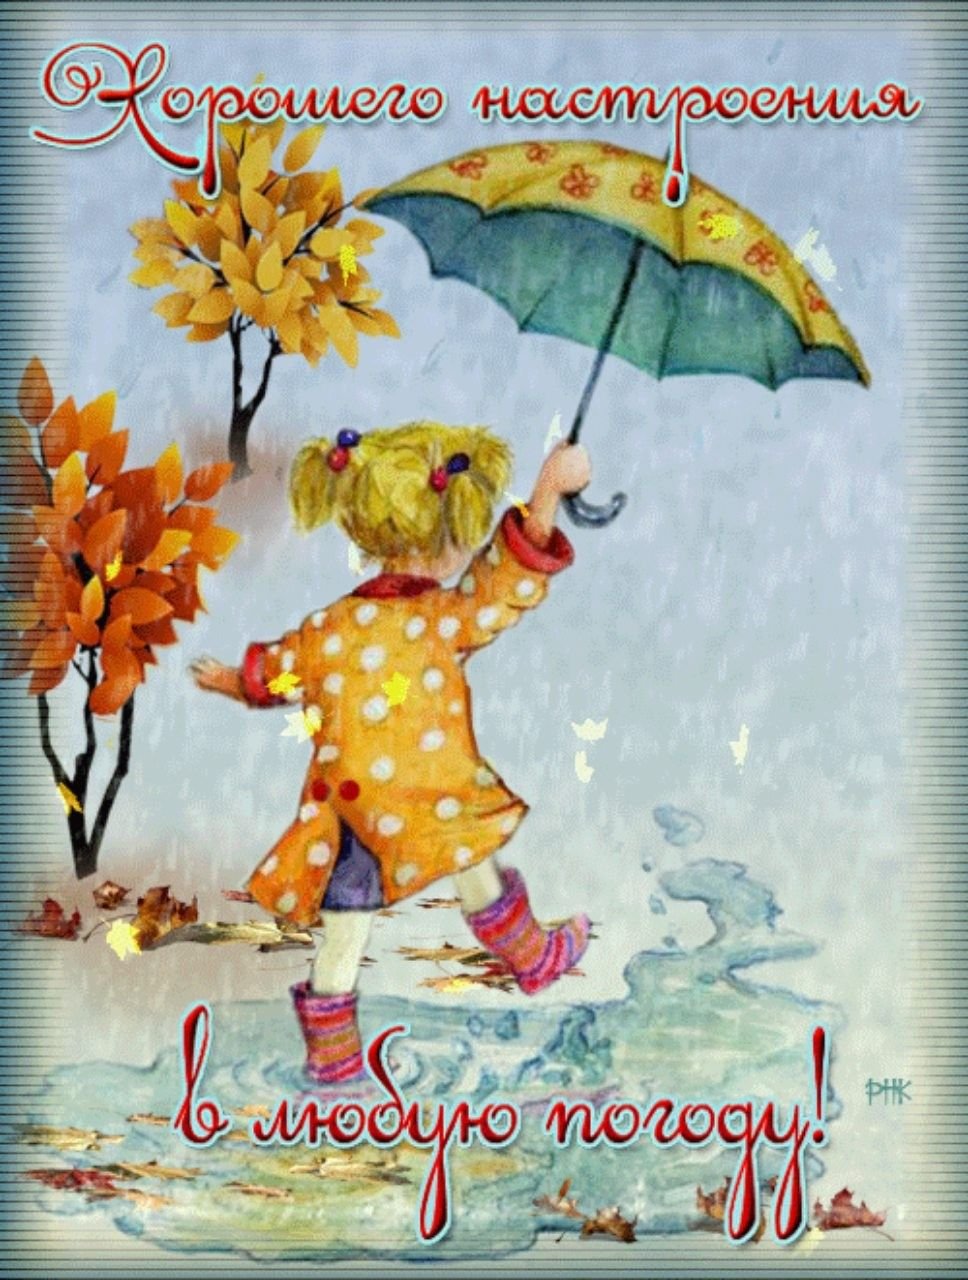 Настроения в любую погоду открытки. Открытки хорошего настроения в любую погоду. Отличного настроениев любую погоду. Открытки с добрым дождливым утром. Хорошего настроения в дождливую осень.